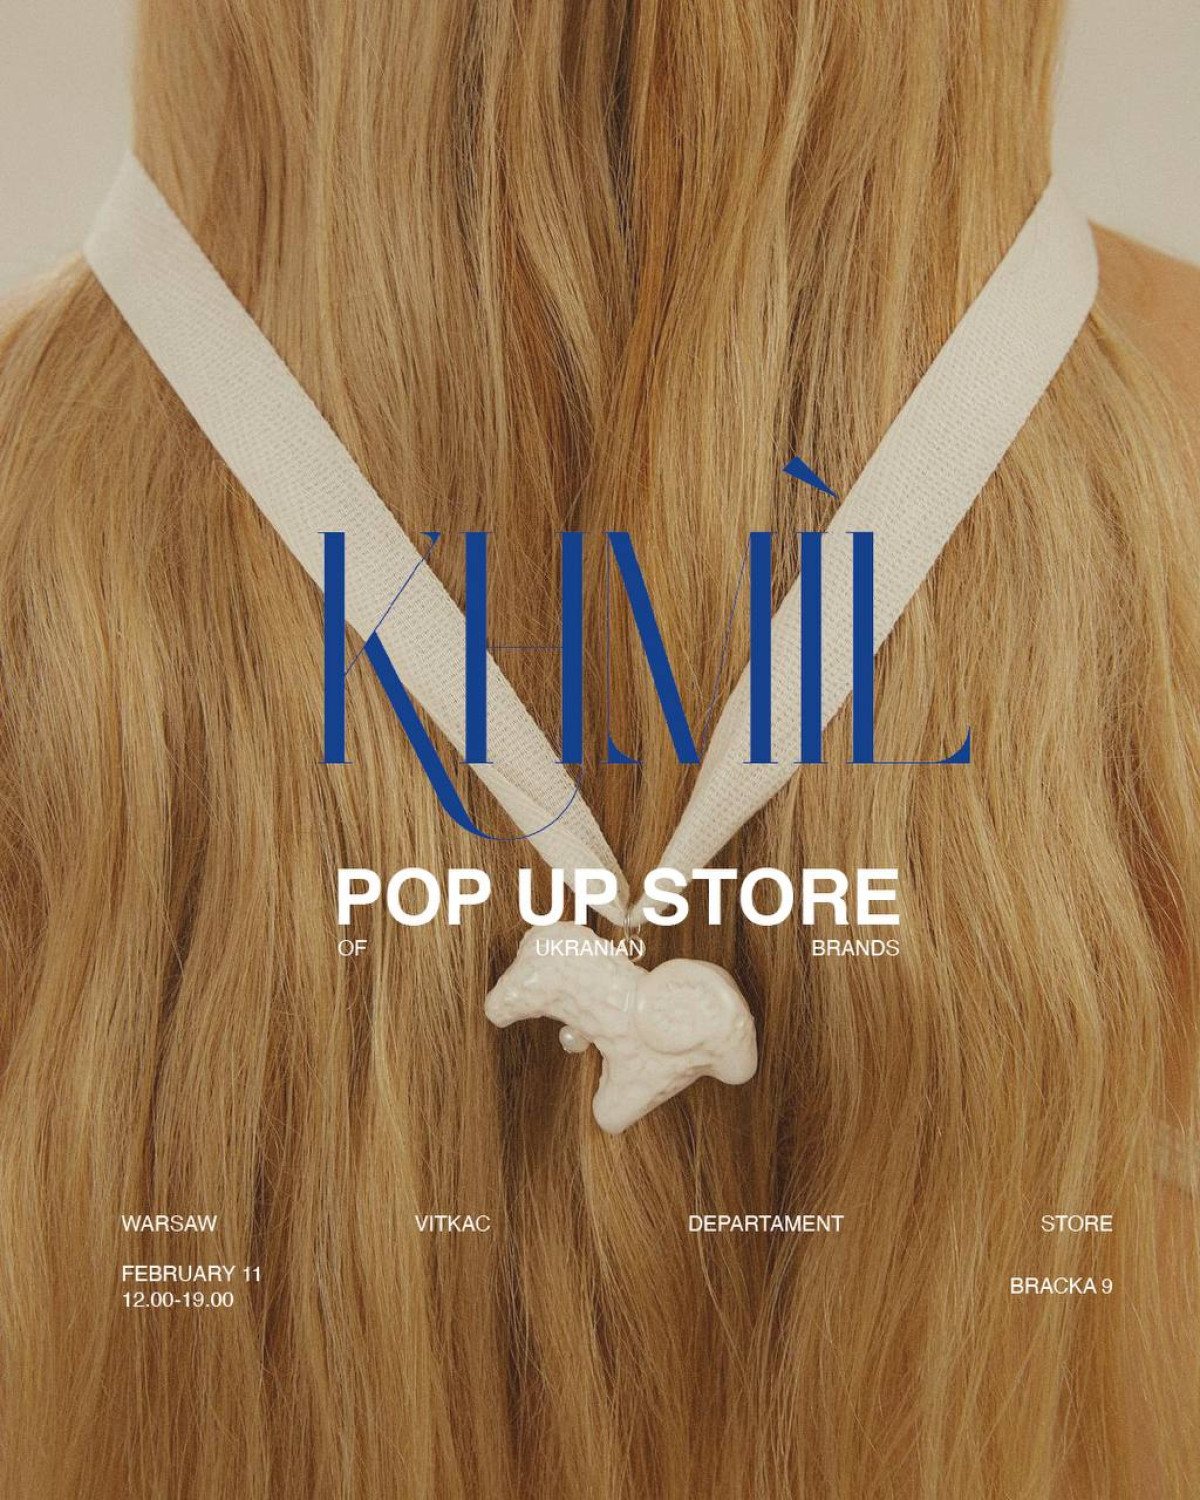 Khmil Concept Store